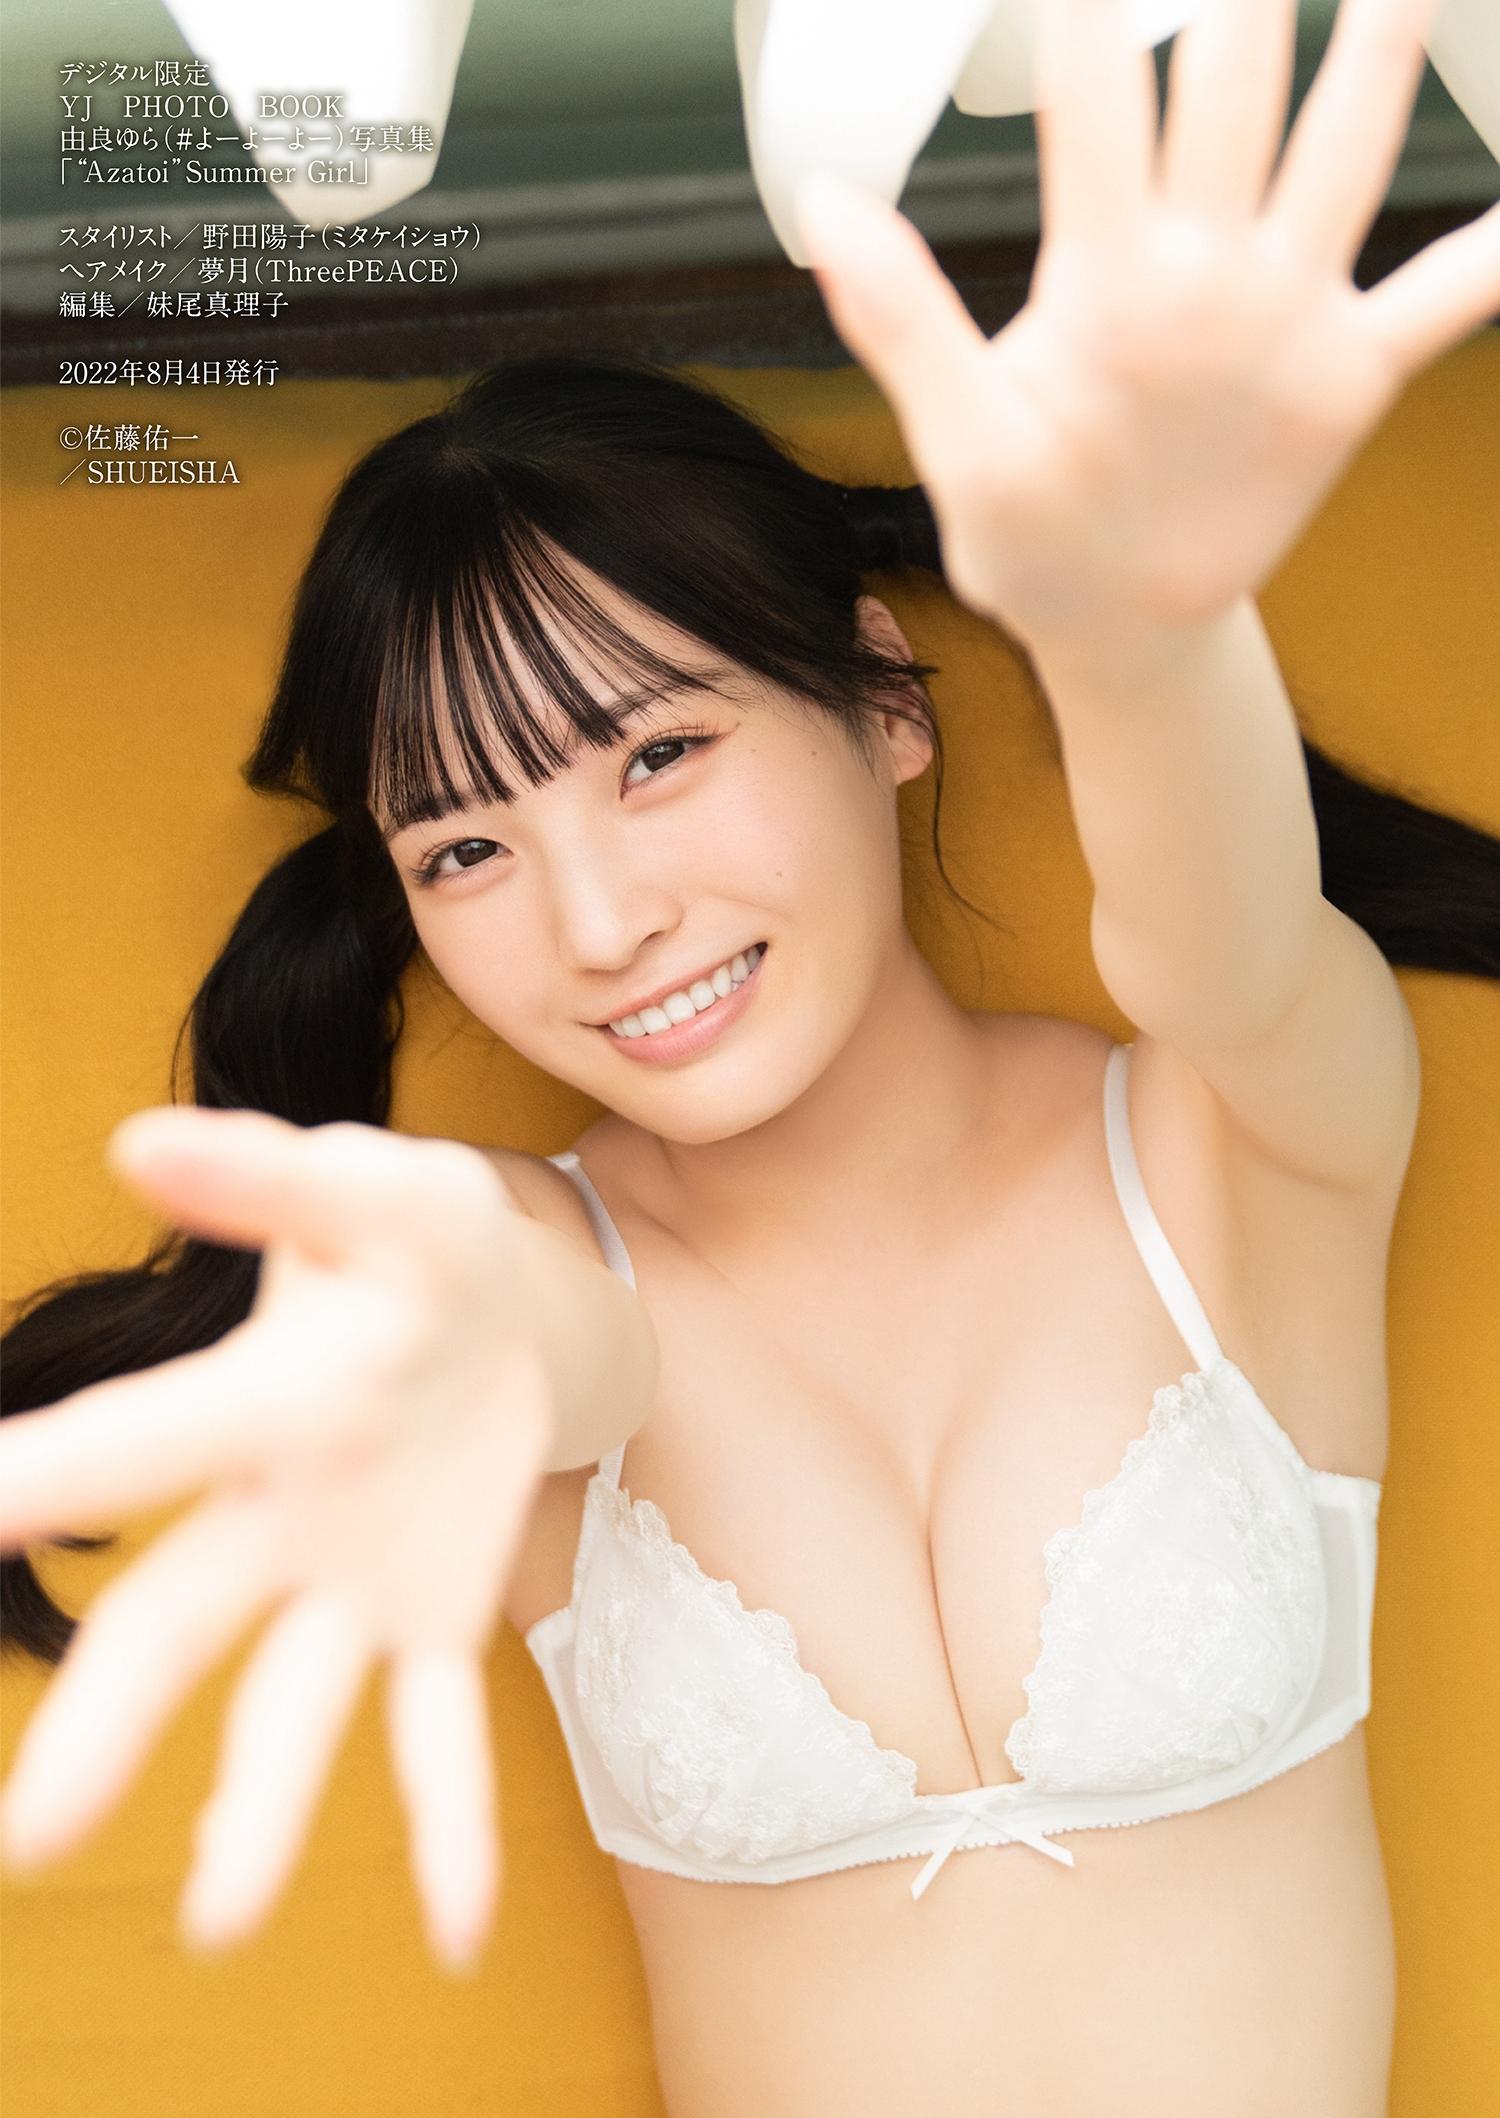 由良ゆら(よーよーよー)写真集「“Azatoi”Summer Girl」比基尼泳装与蕾丝内衣诱惑,0048